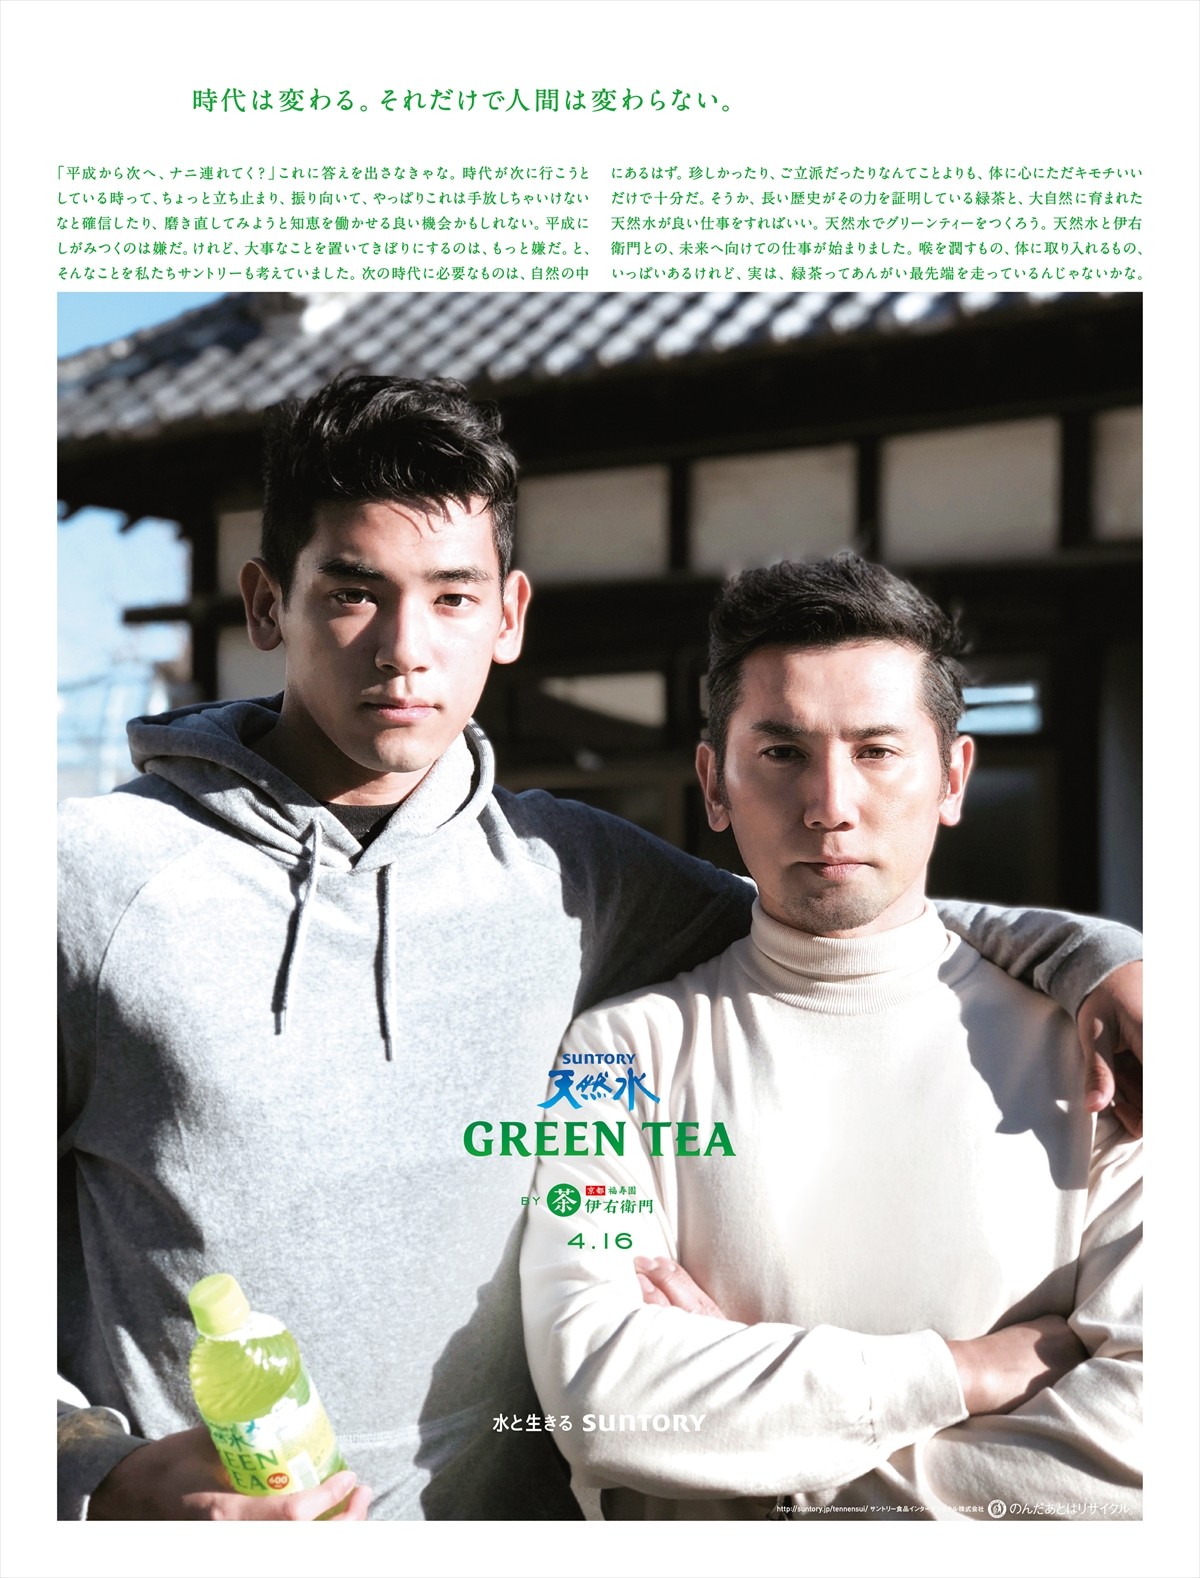 『サントリー天然水 GREEN TEA』のメッセンジャーを務めるUTAと父・本木雅弘